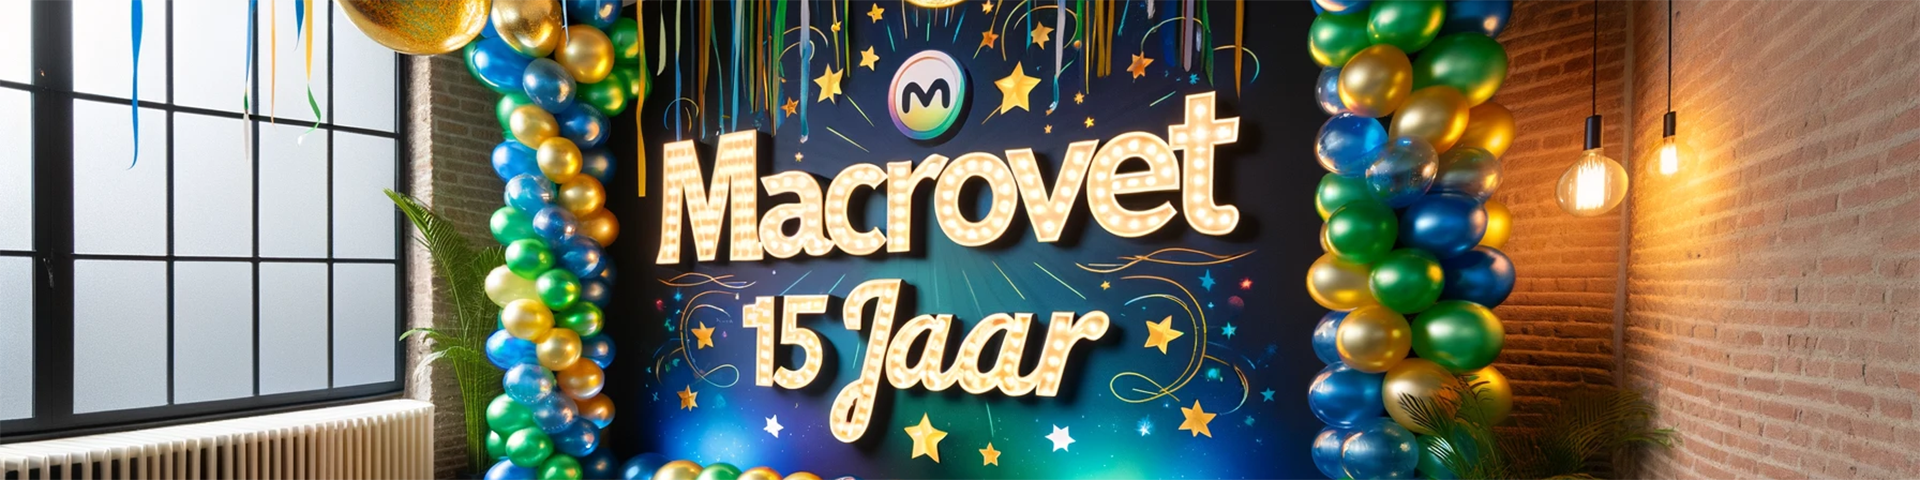 macrovet-15-jaar